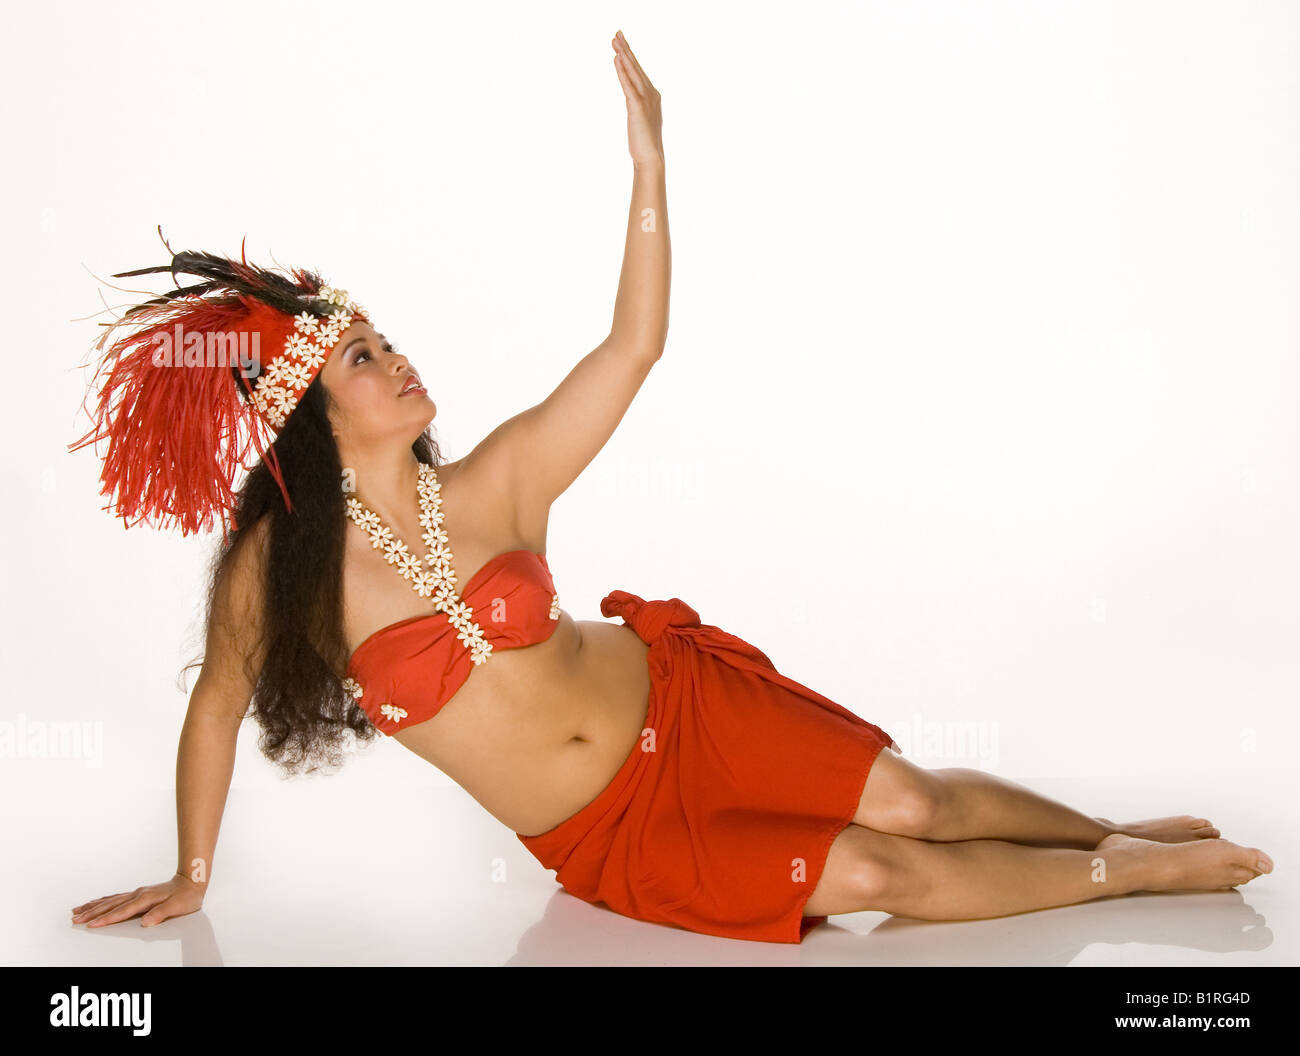 Islander woman danse tahitienne coiffe de plumes Banque D'Images